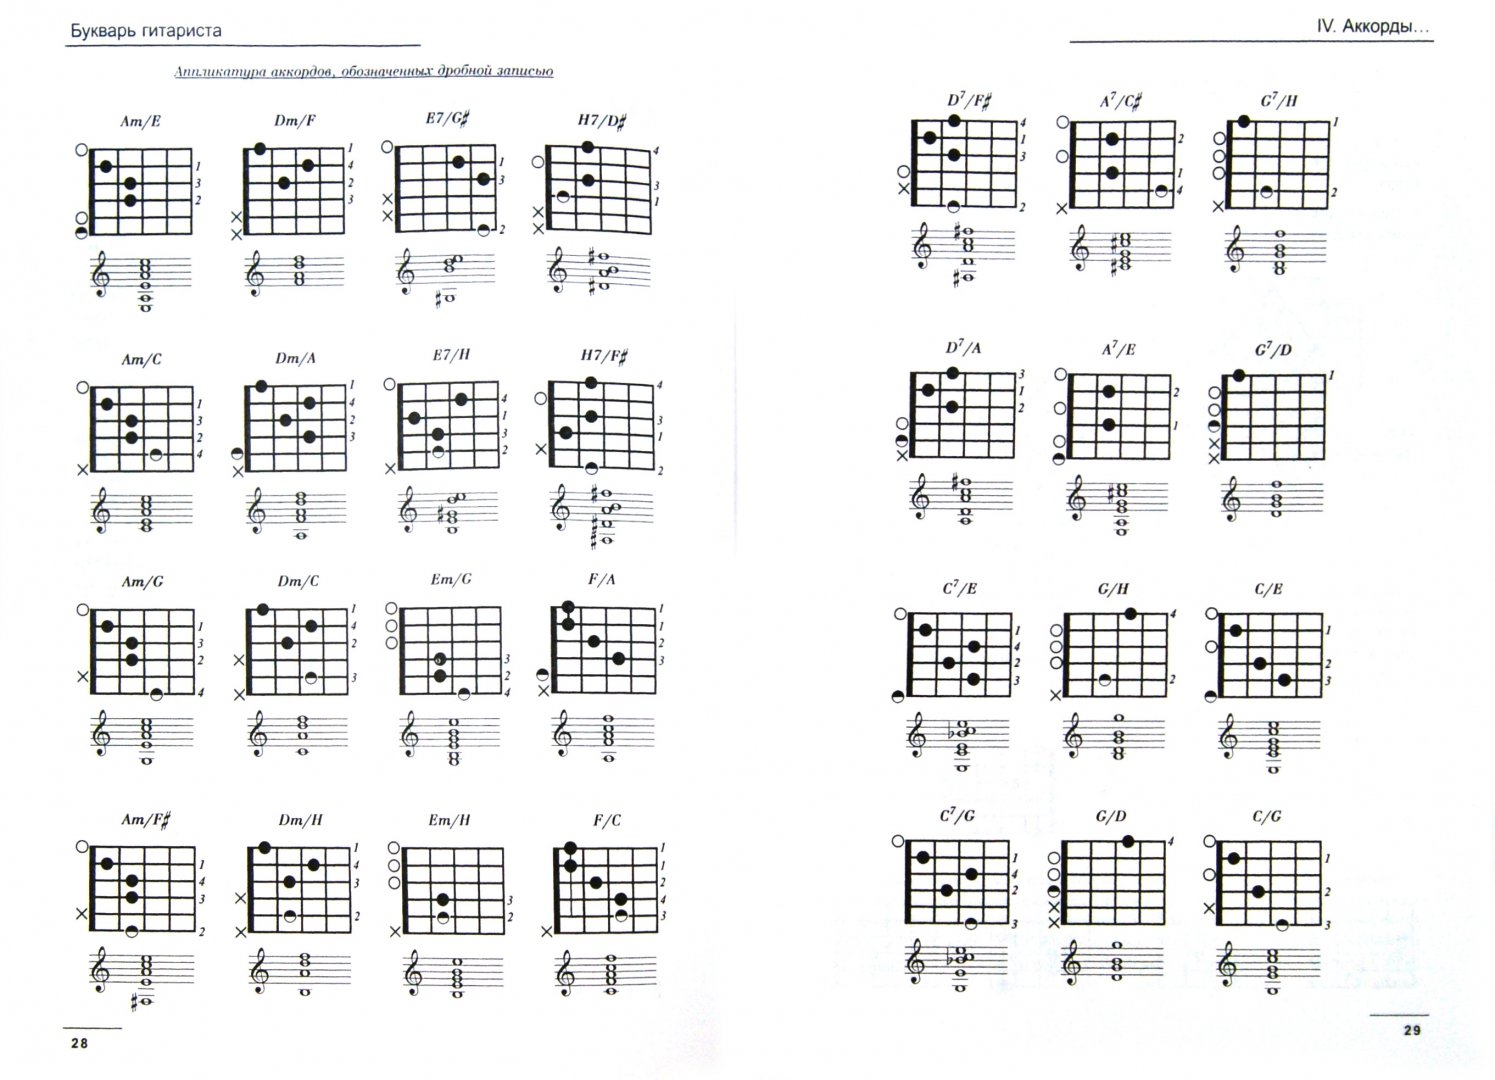 6 струнная гитара для начинающих песни. Схемы аккордов. Аккорды для гитары шестиструнной. Аппликатура аккордов для гитары. Таблица аккордов для гитары.